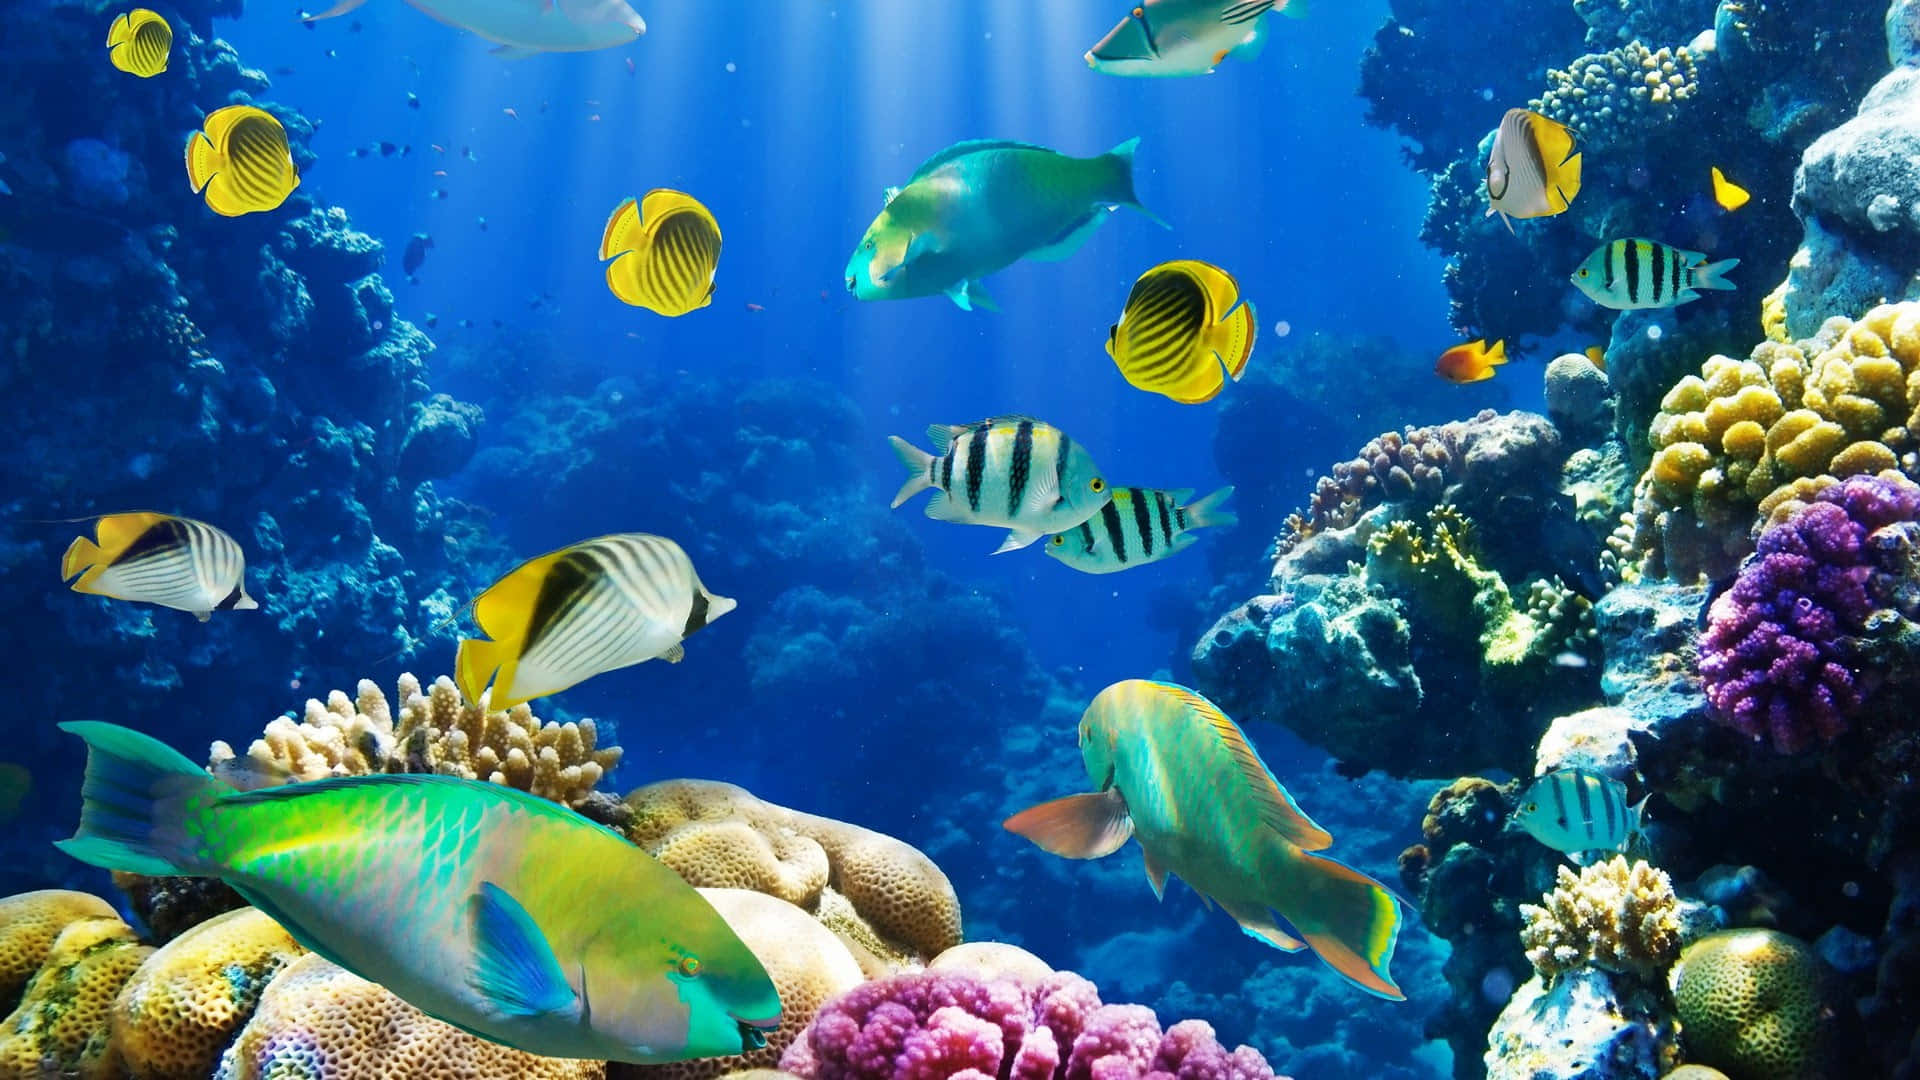 Caption: Vibrant Underwater Ecosystem